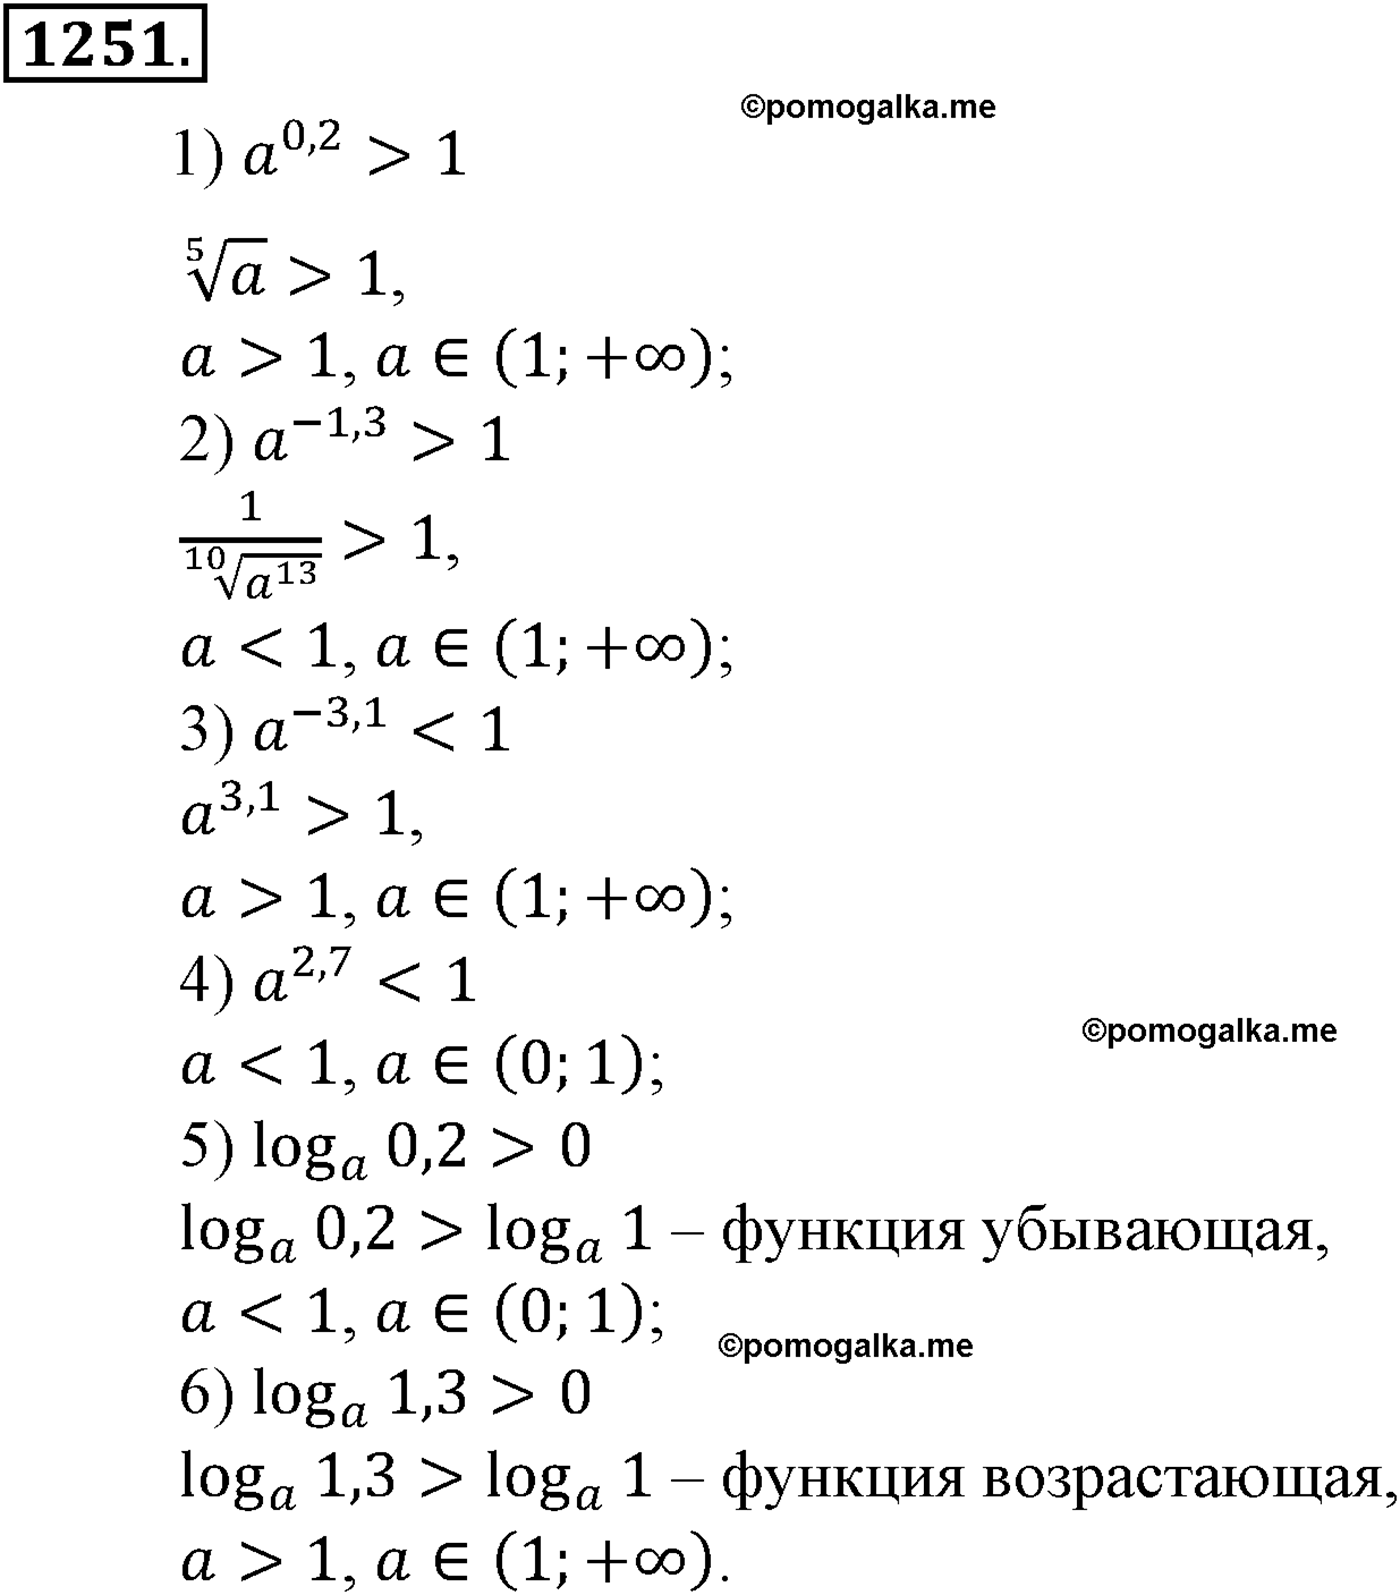 разбор задачи №1251 по алгебре за 10-11 класс из учебника Алимова, Колягина